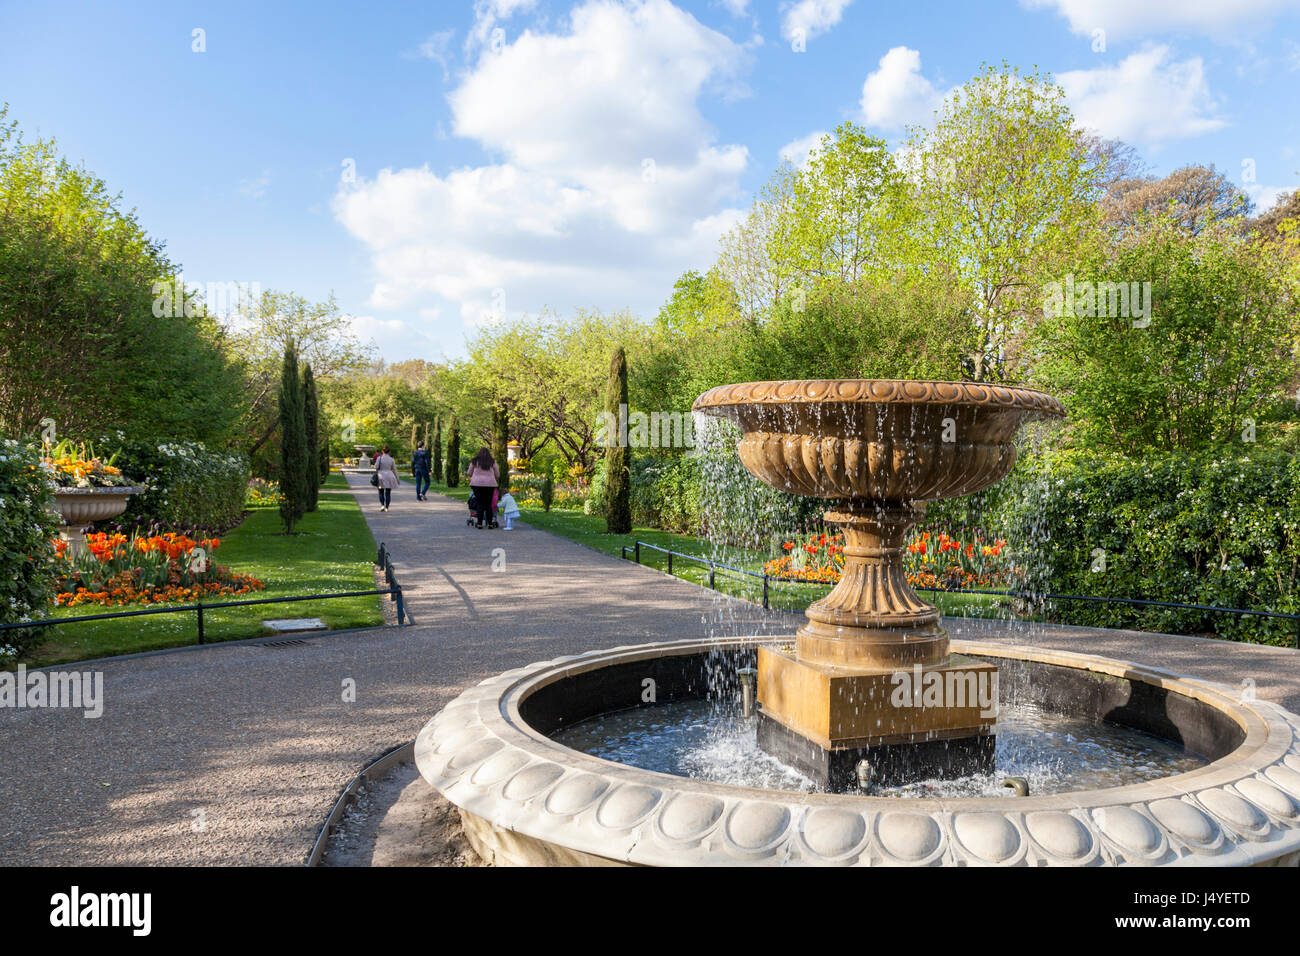 Fontaine, arbres et fleurs au printemps à l'Avenue Gardens at Regents Park, London, England, UK Banque D'Images